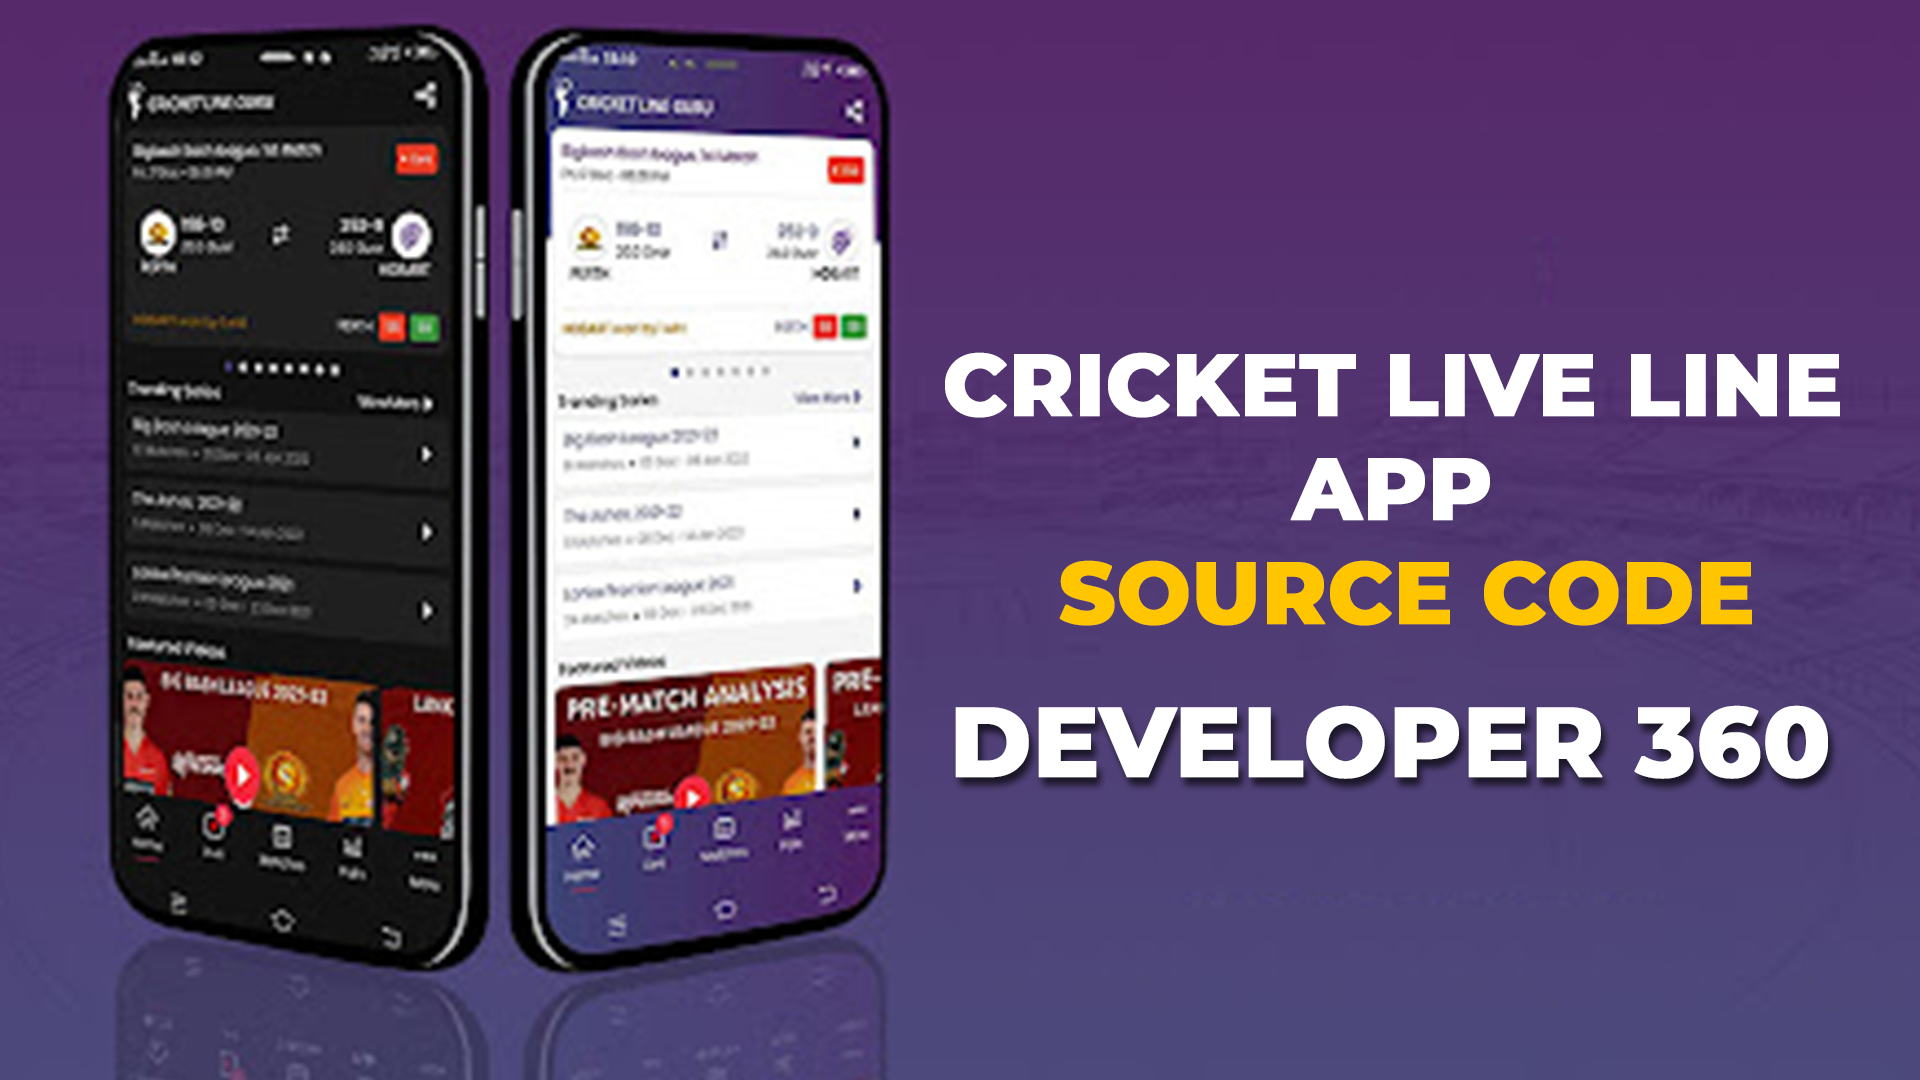 Cricket Live Line App Source Code - Developer 360